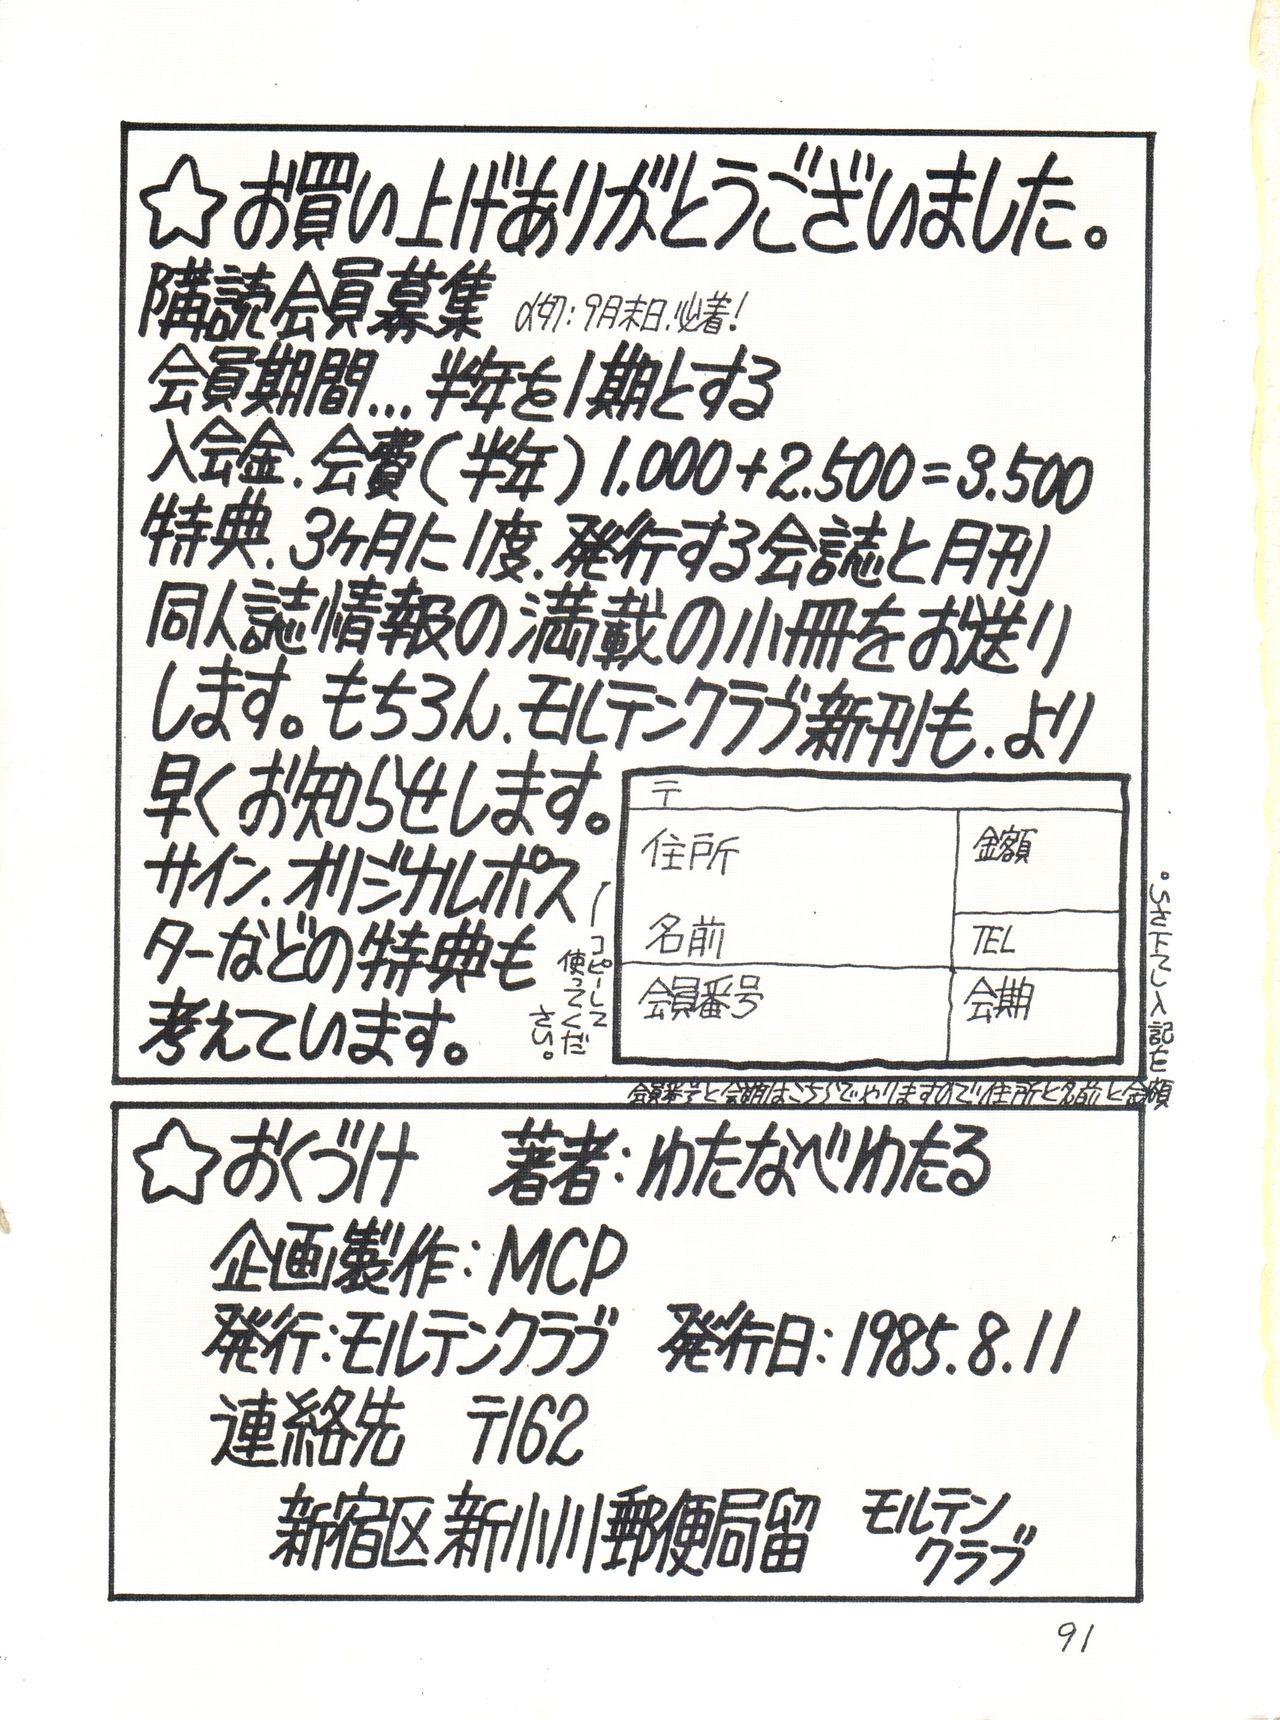 Teentube Gyakuten Juppatsuman - Urusei yatsura Creamy mami Scene - Page 91